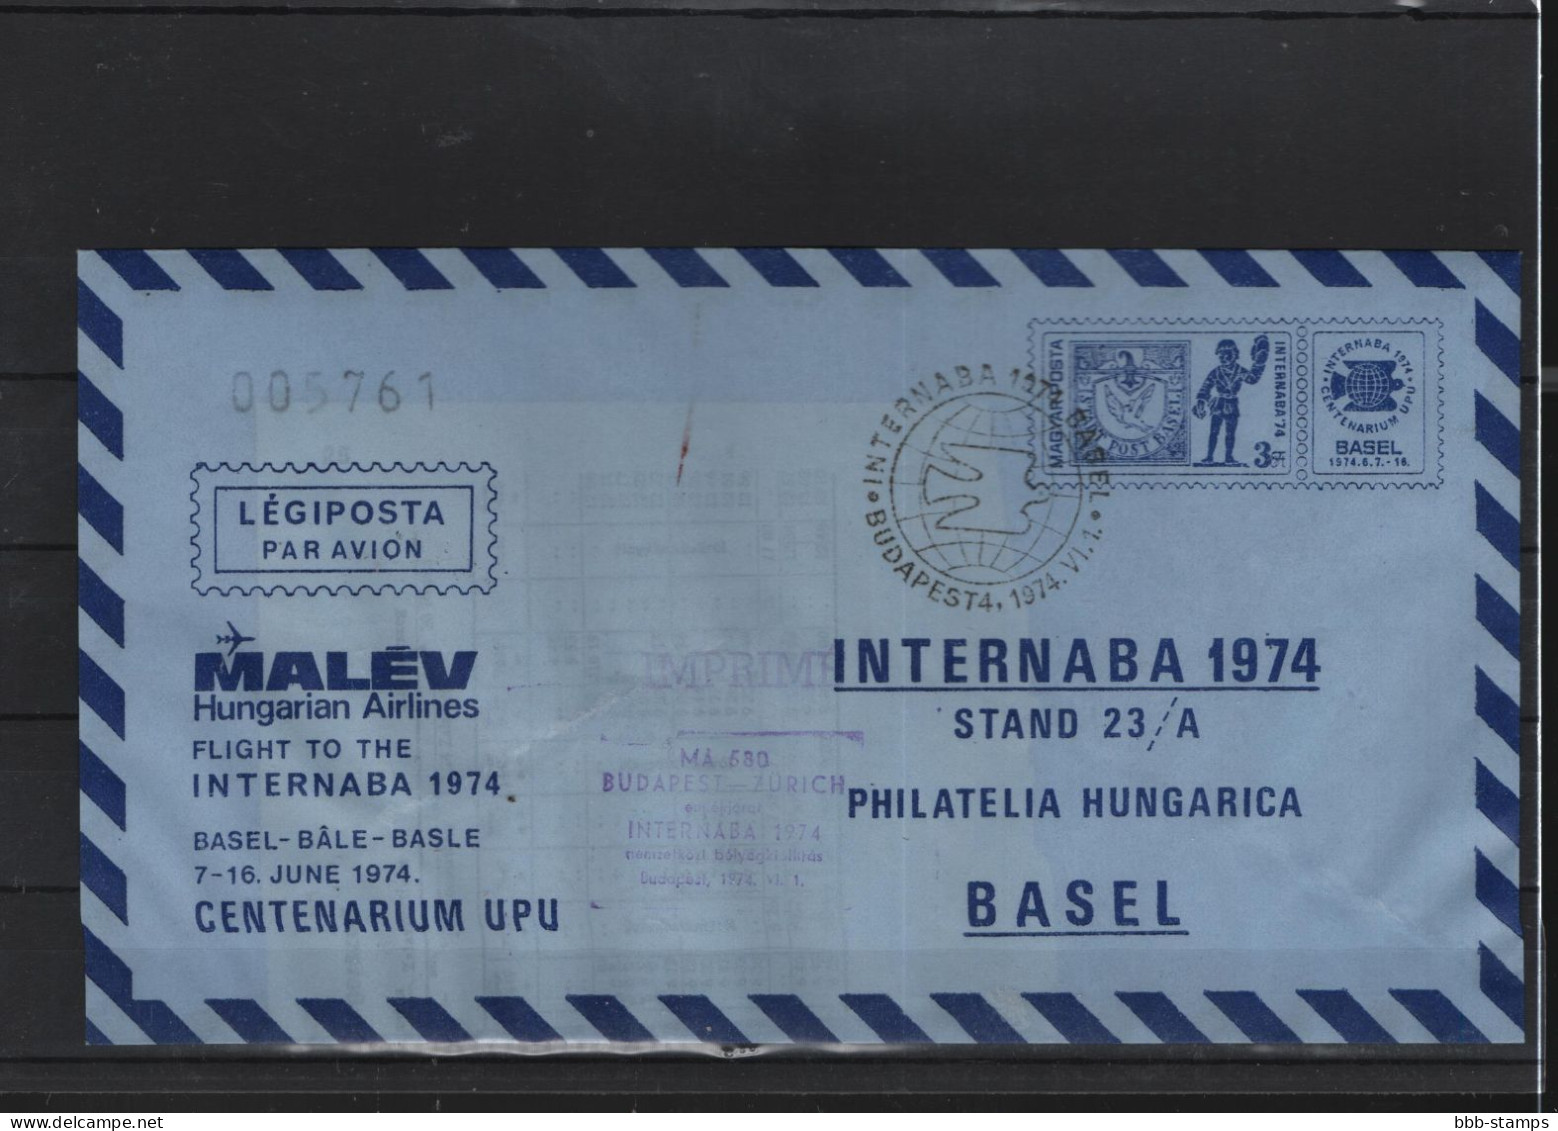 Schweiz Luftpost FFC Malev 4.4.1972 Budapest - Basel - Premiers Vols